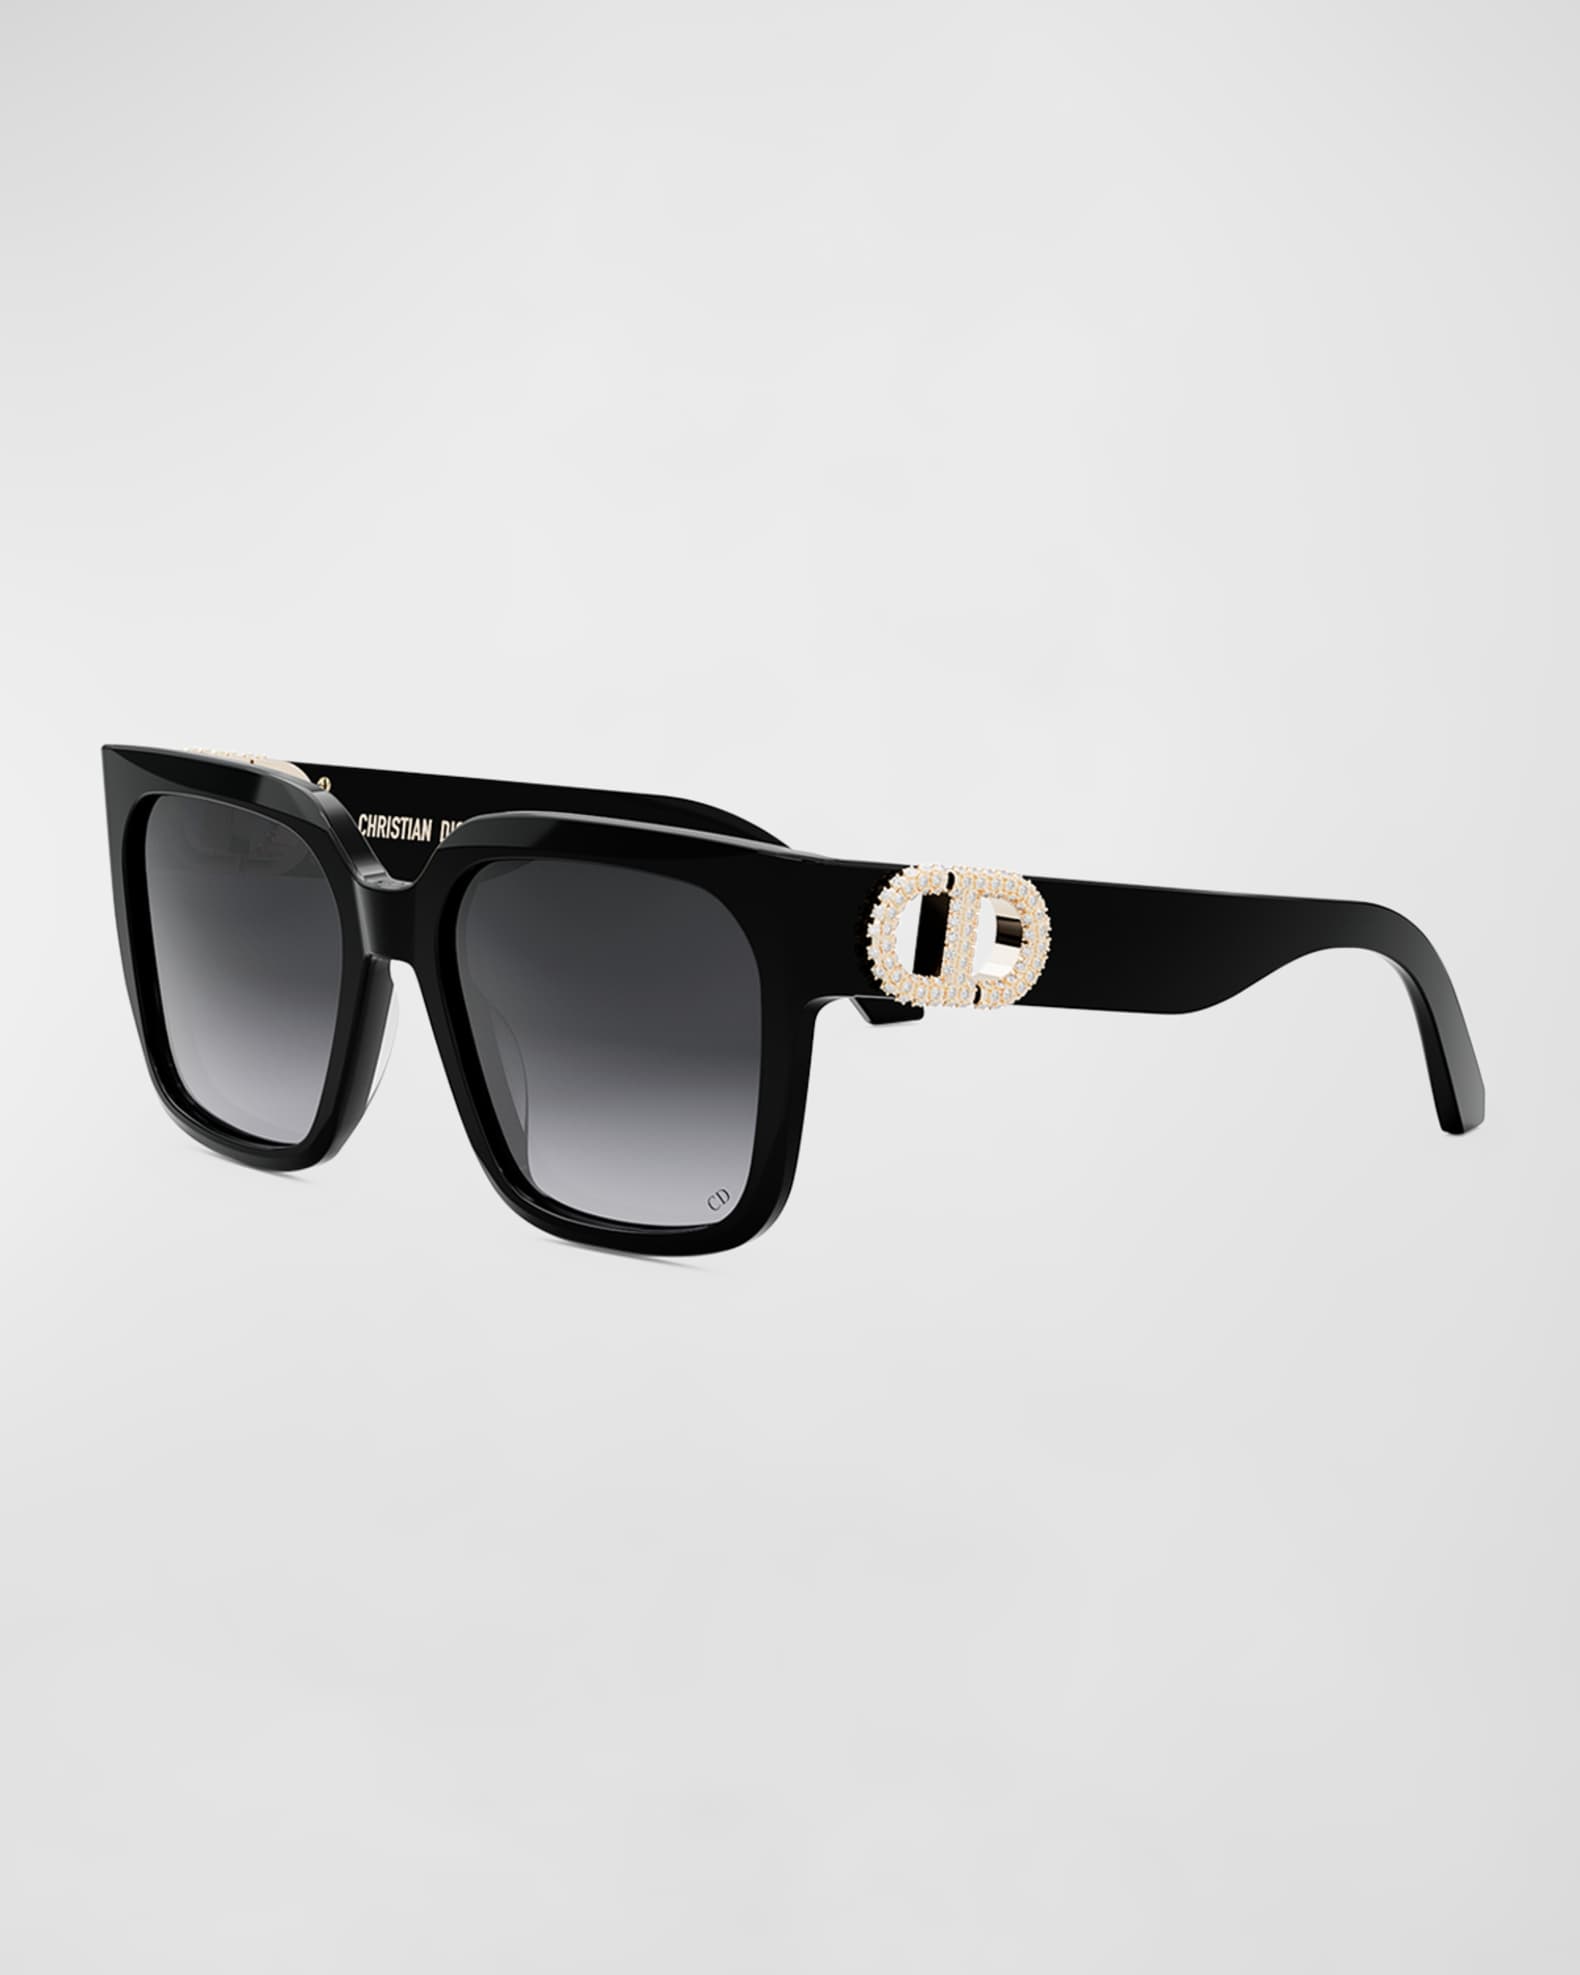 How To Authenticate Louis Vuitton Millionaire Sunglasses - Legit Check By  C…  Louis vuitton millionaire sunglasses, Louis vuitton sunglasses, Louis  vuitton glasses